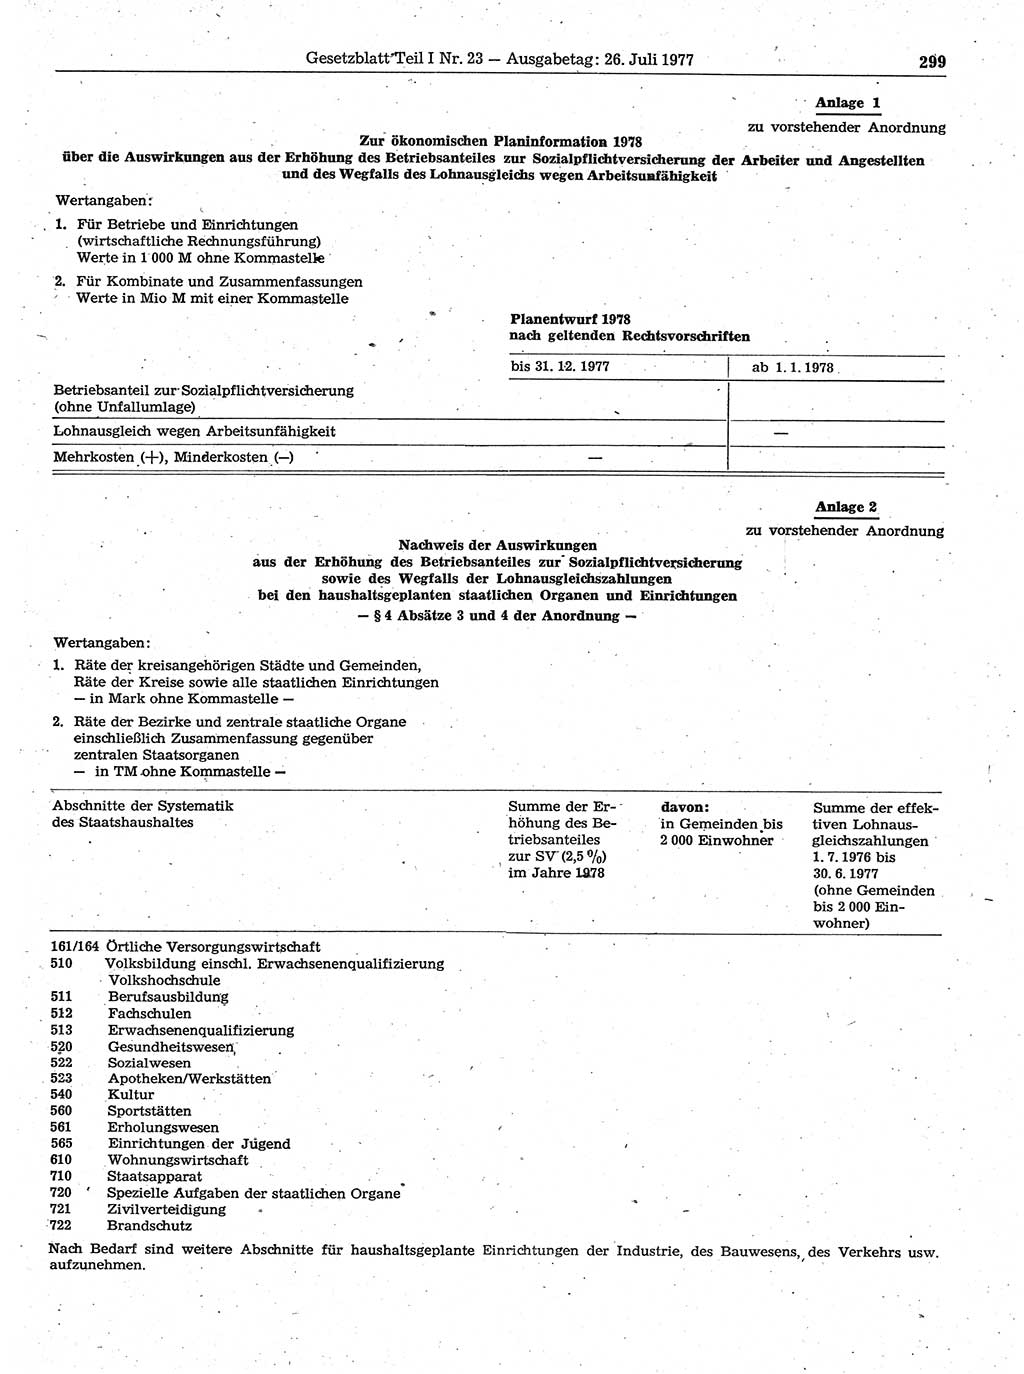 Gesetzblatt (GBl.) der Deutschen Demokratischen Republik (DDR) Teil Ⅰ 1977, Seite 299 (GBl. DDR Ⅰ 1977, S. 299)